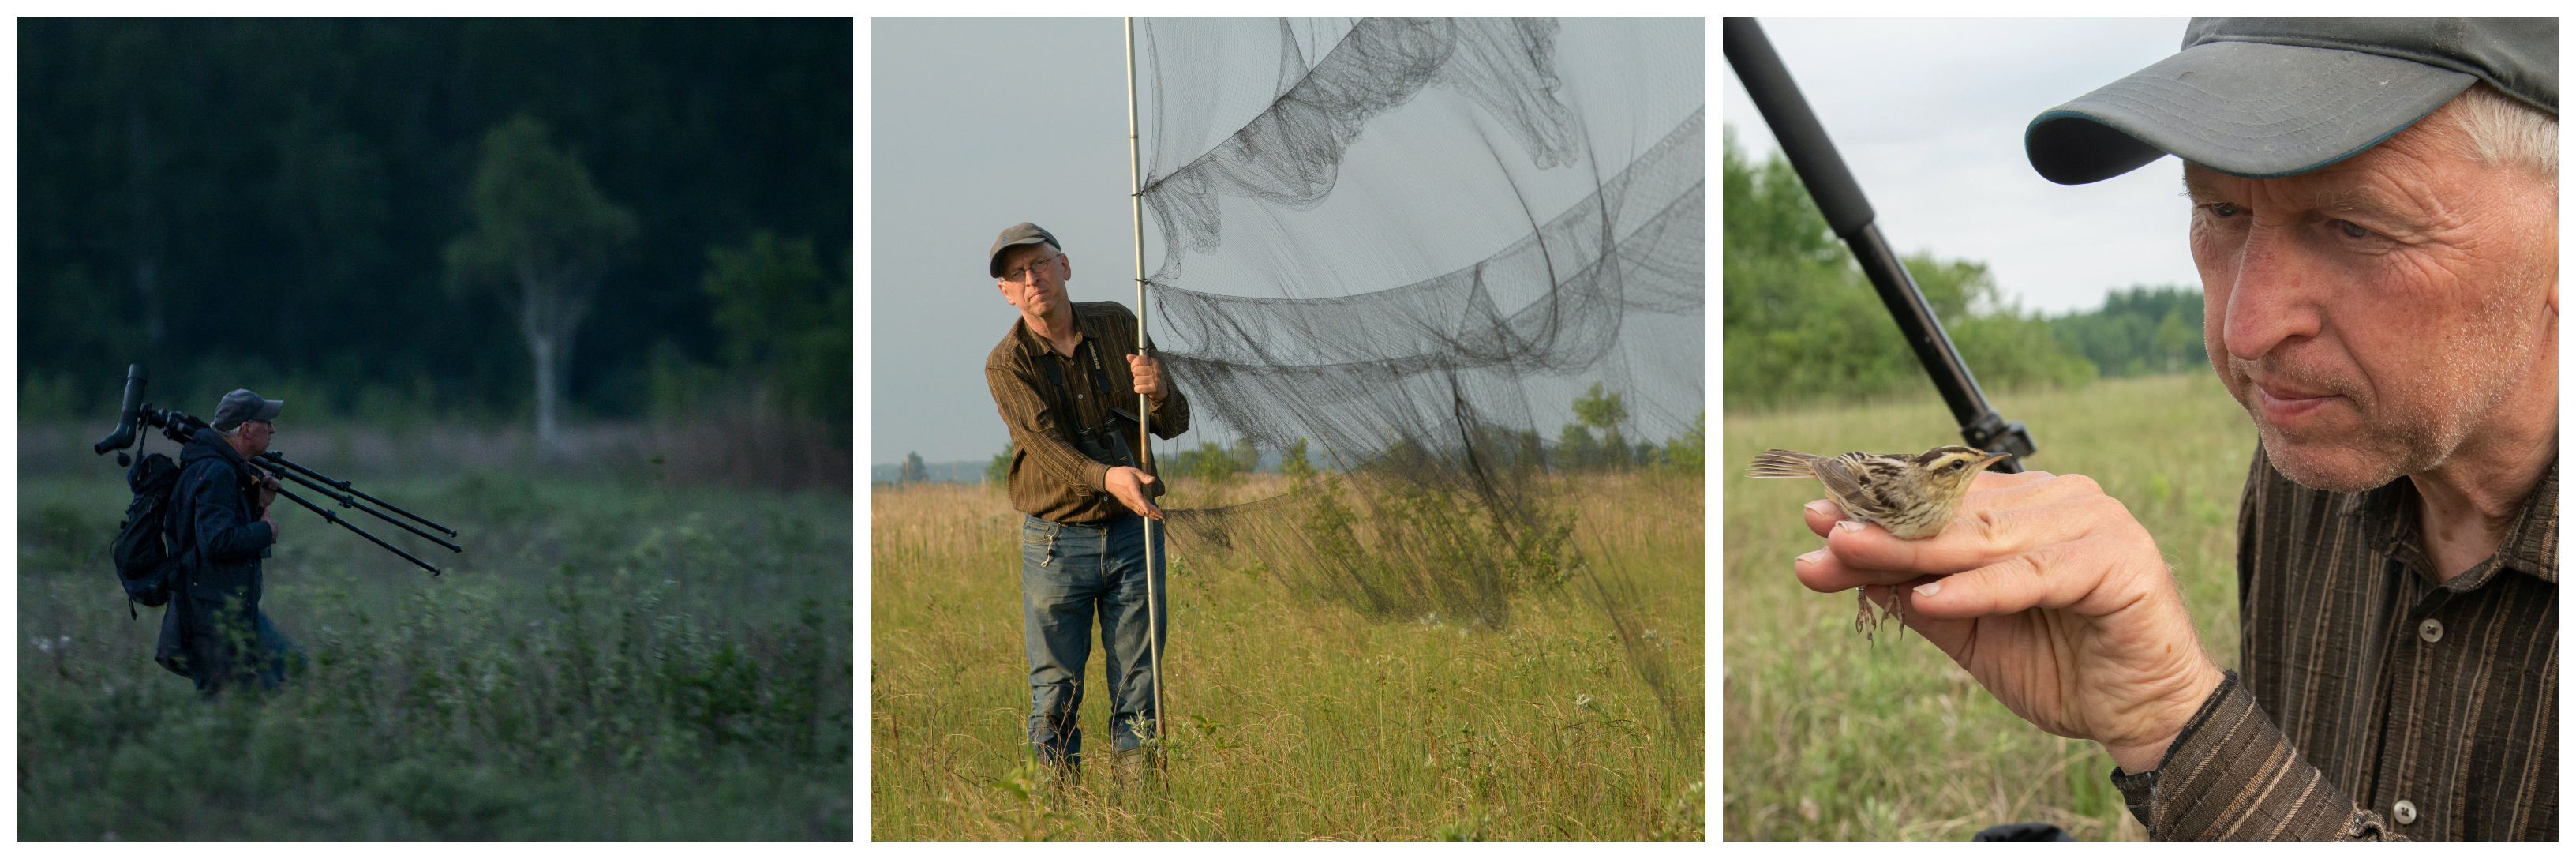 Мартин Фладе проводит исследование вертлявой камышевки с применением геолокатора. Фото Клауса Нигге